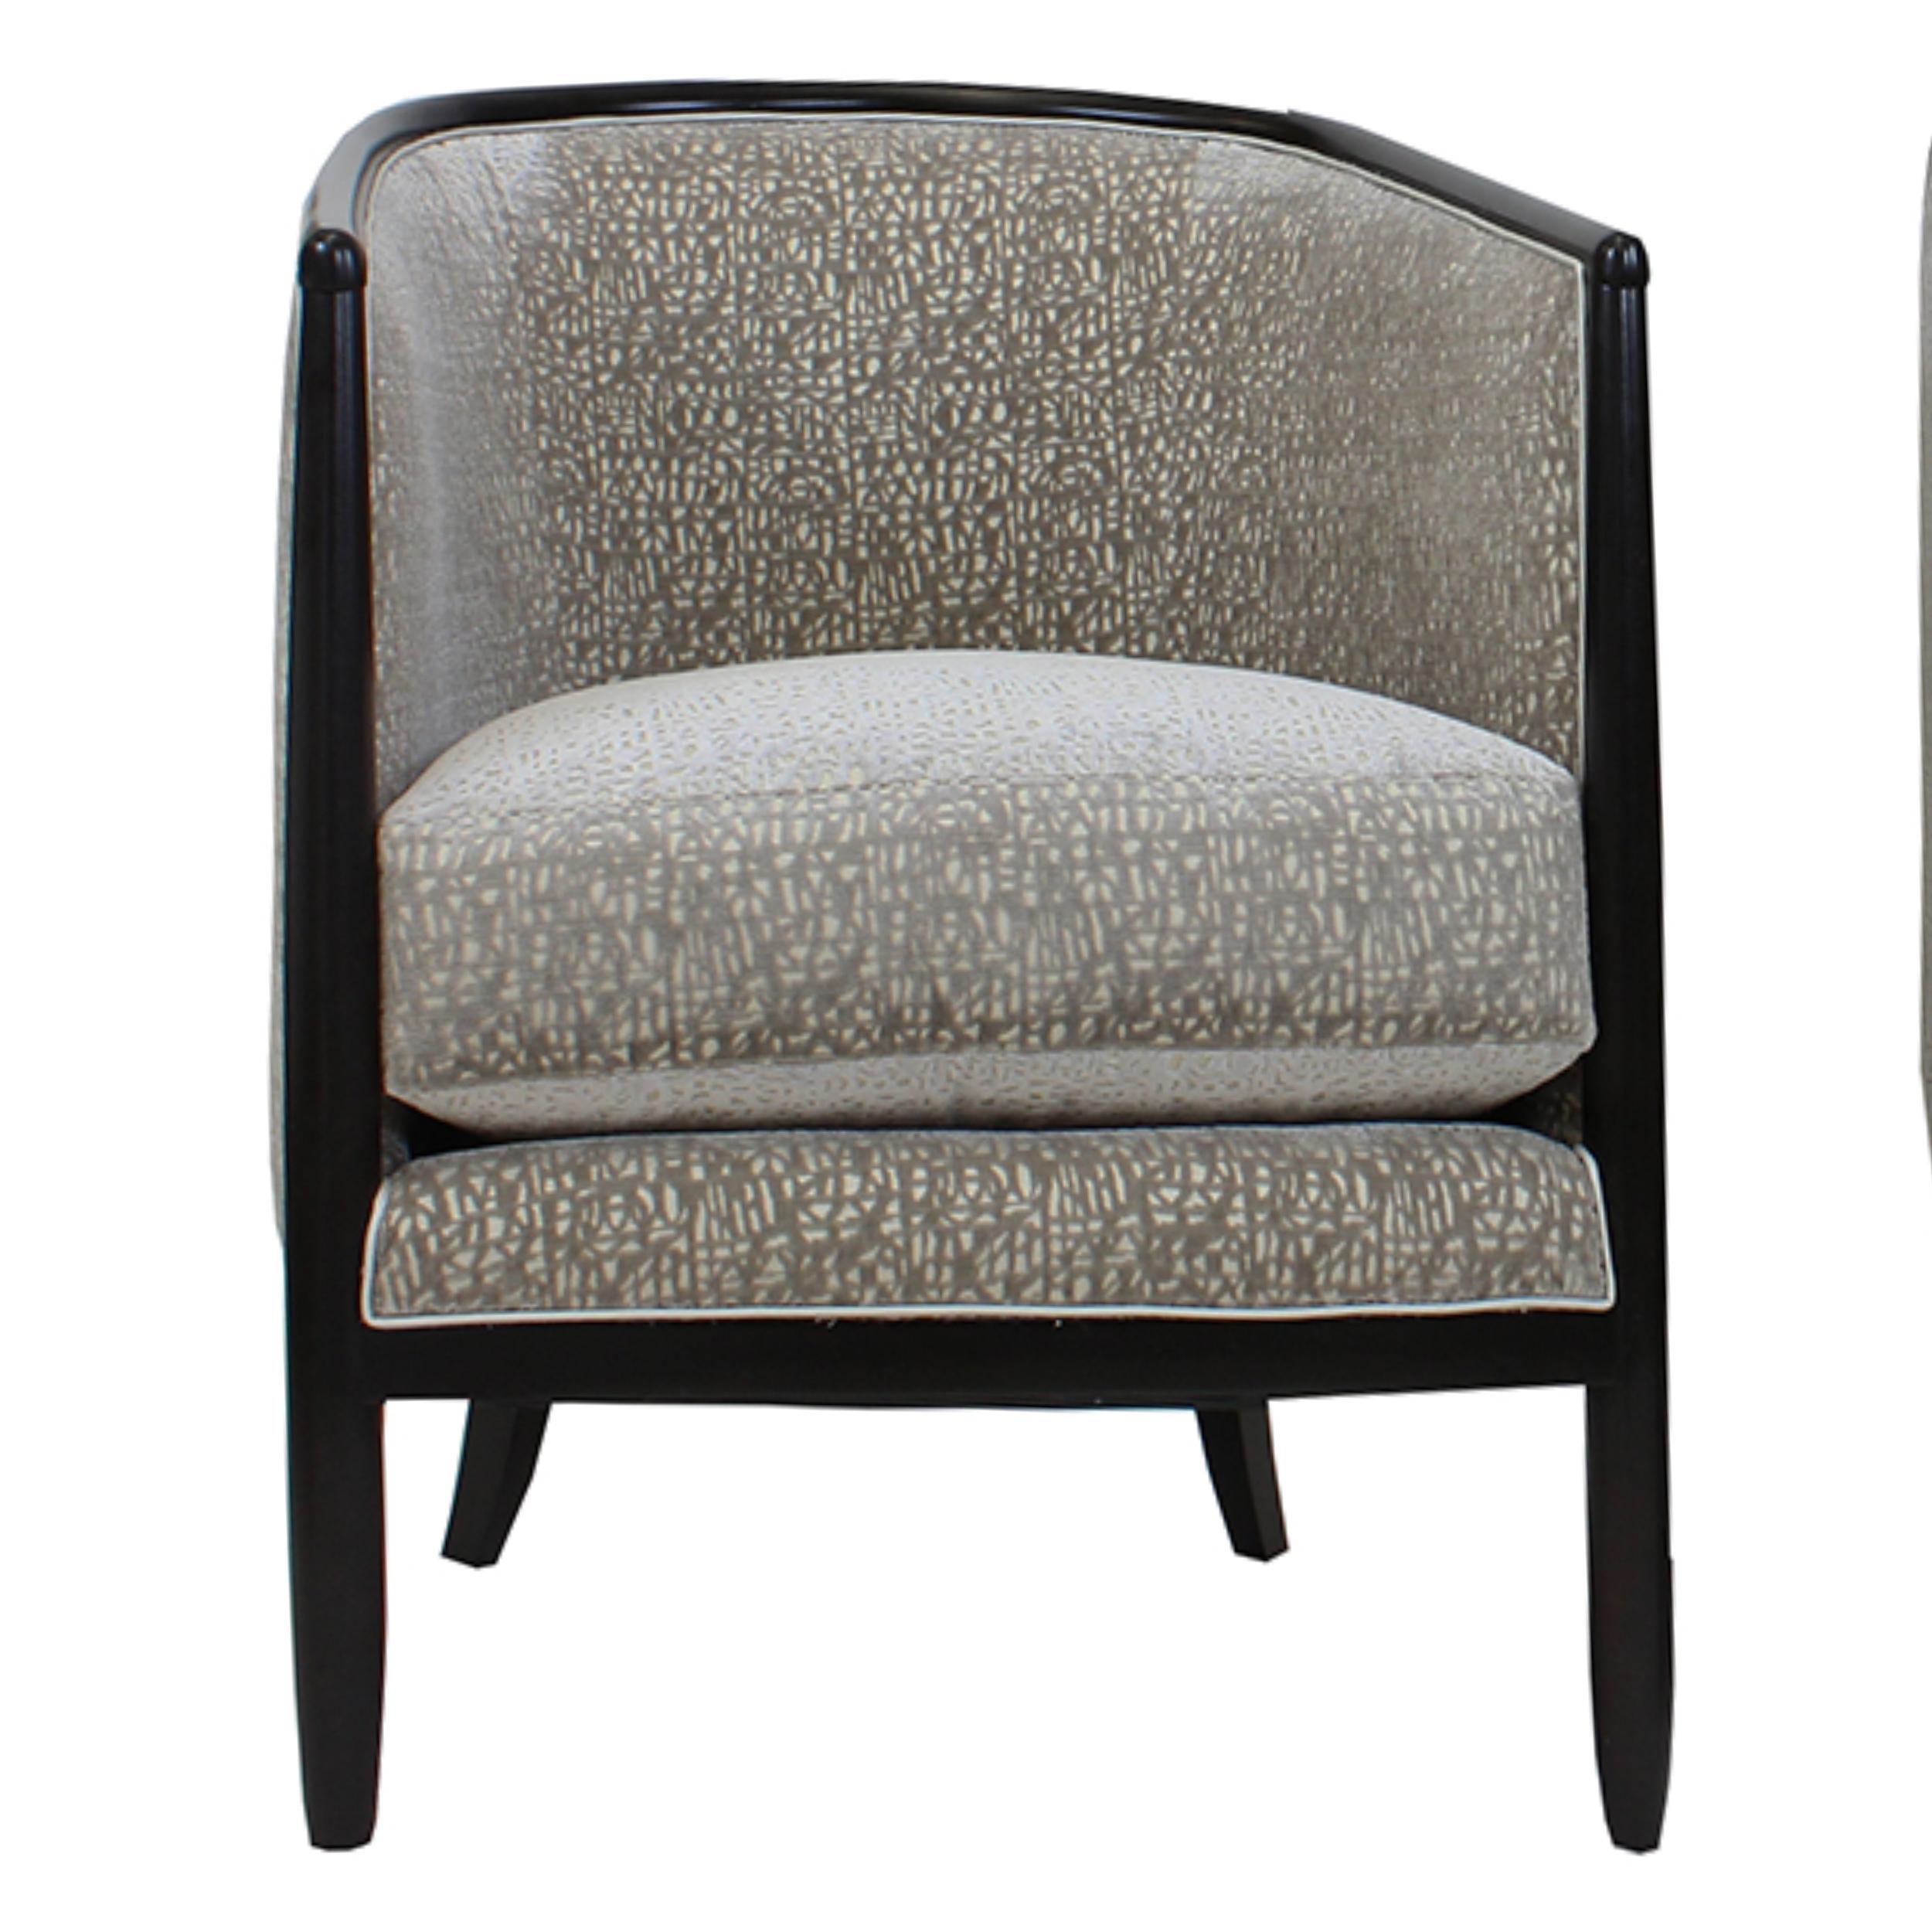 Cette chaise d'inspiration Art Déco est fabriquée en bois d'acajou africain et tapissée d'un doux velours coupé. La forme en tonneau à dossier serré en fait un fauteuil confortable, luxueux et chic. Le coussin de l'assise est constitué d'une mousse